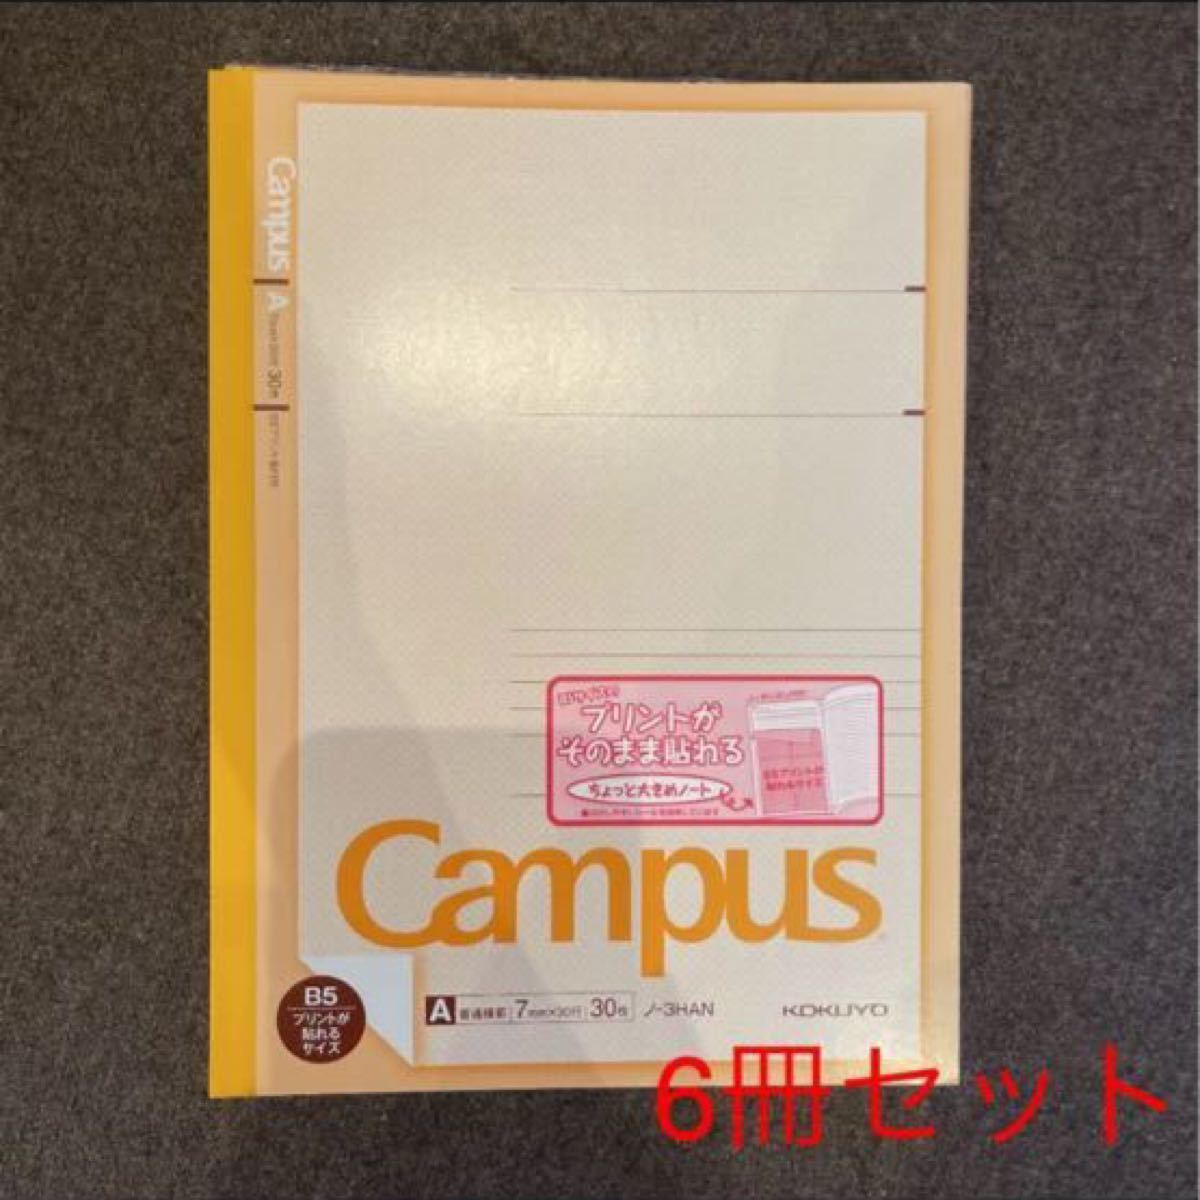 Paypayフリマ B5が貼れるノート キャンパス ノート 5冊セット プリントが貼れるノート